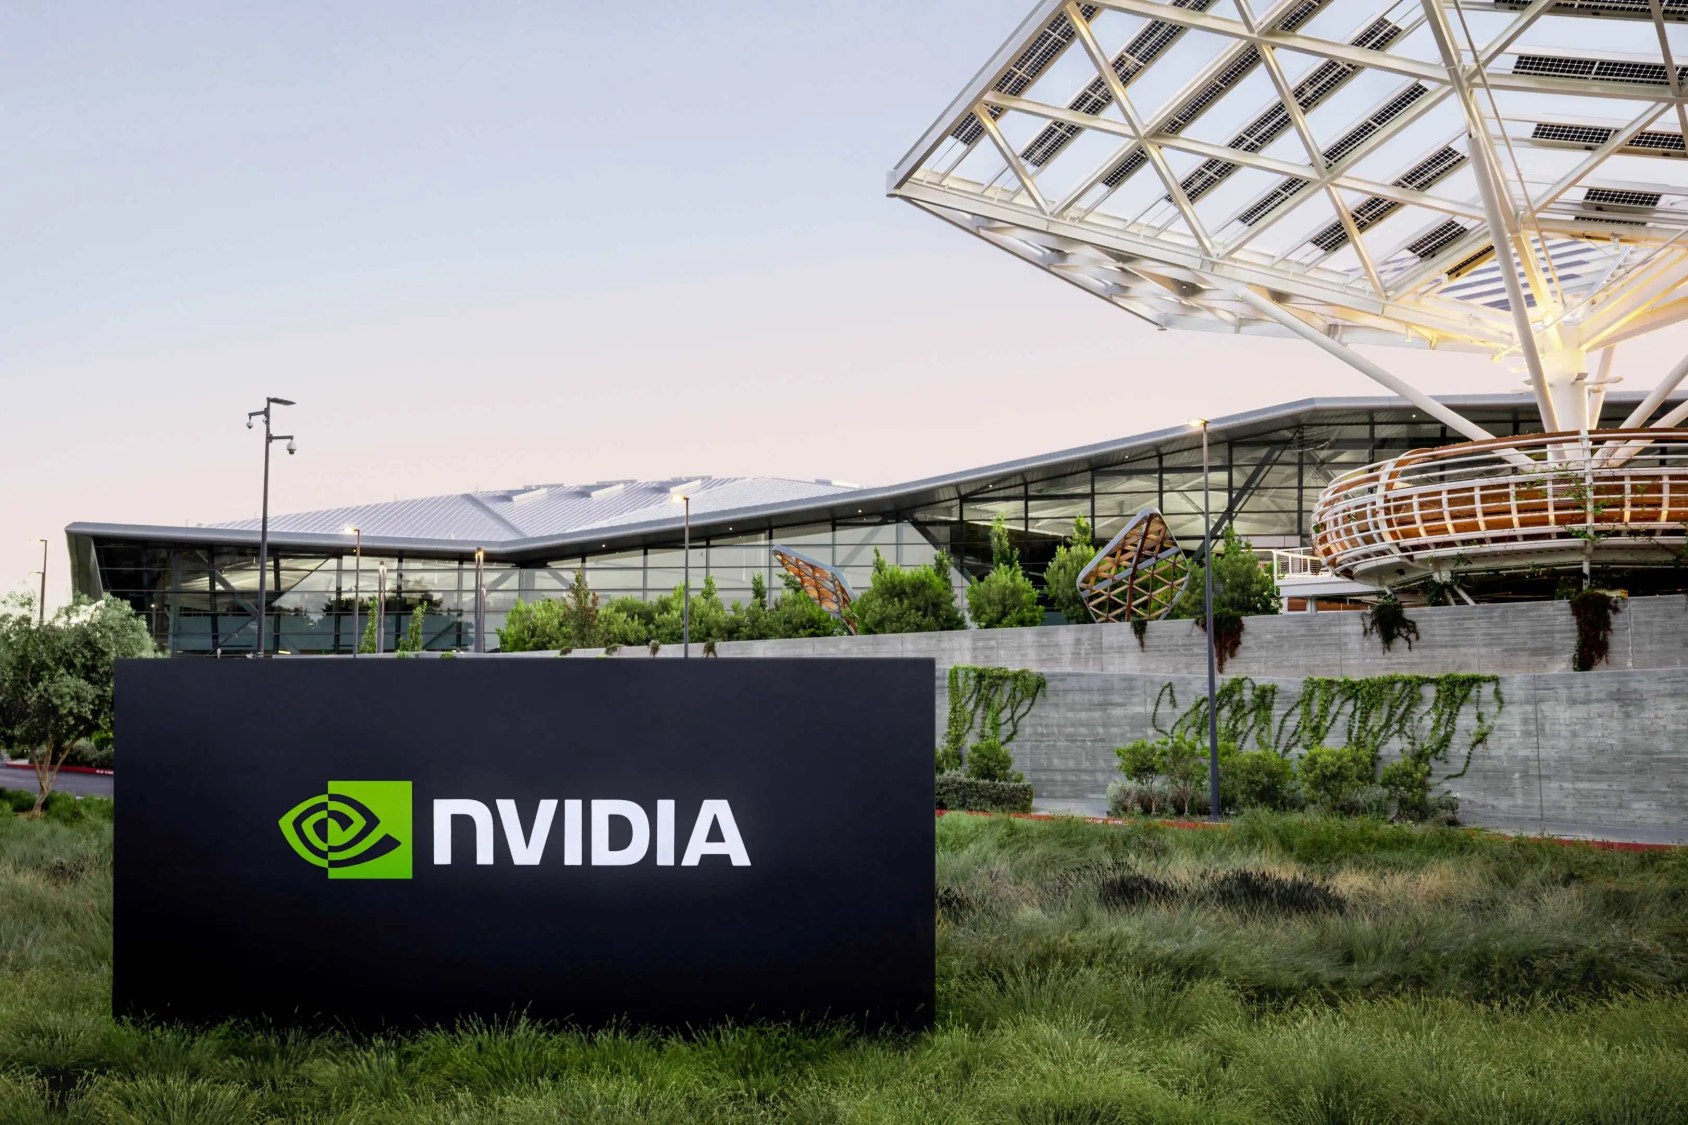 Ações de tecnologia: A Nvidia, assim como a Supermicro, é uma empresa do ramo de inteligência artificial que disparou na bolsa de NY